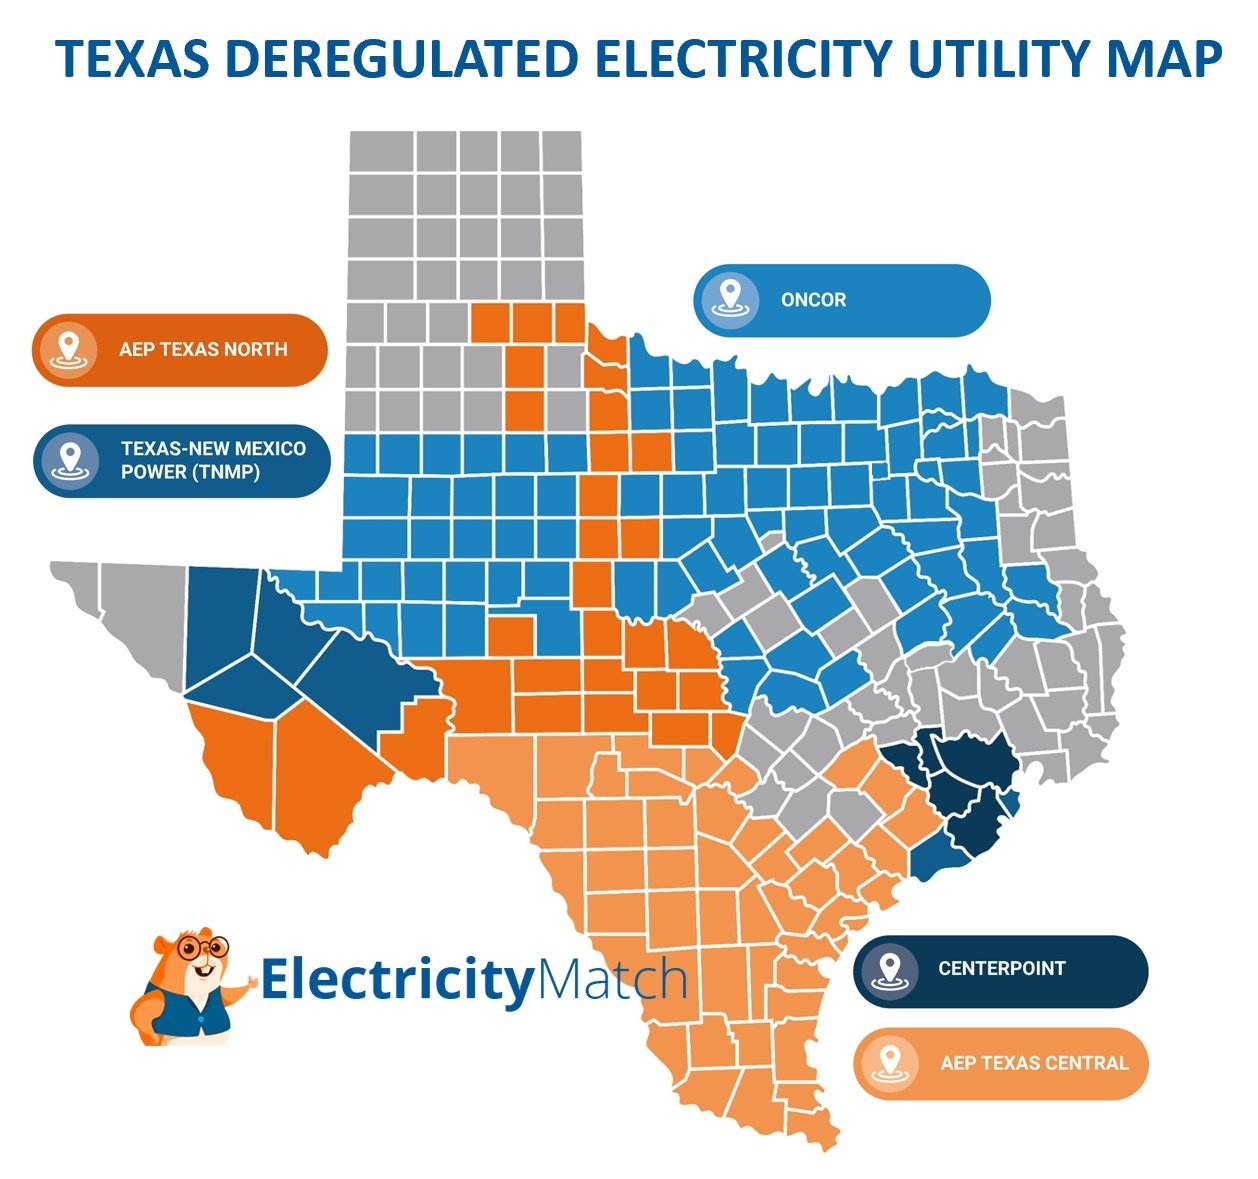 https://electricitymatch.com/wp-content/uploads/2022/05/Texas-Deregulated-Utility-Map.jpg